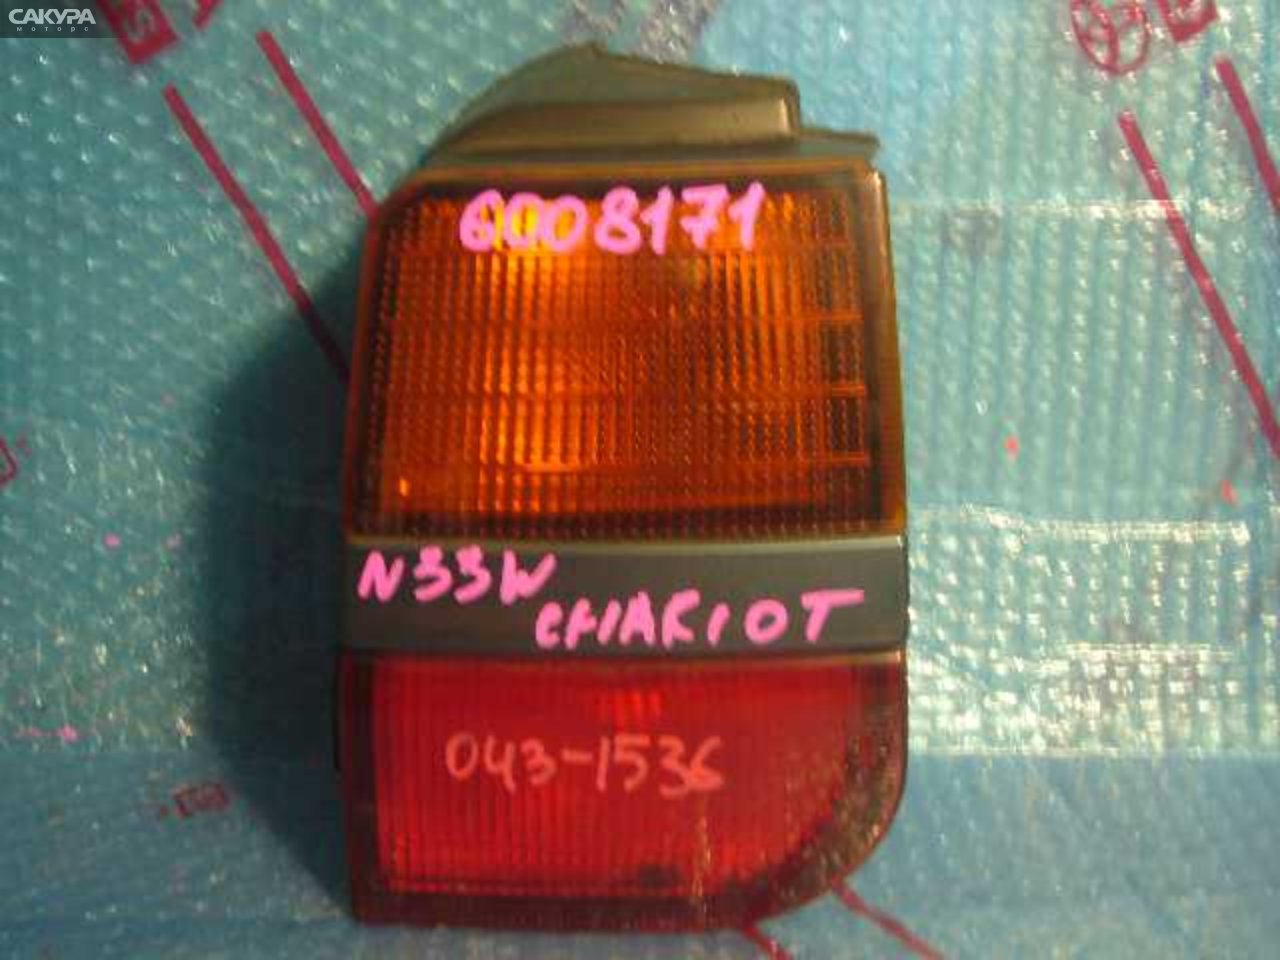 Фонарь стоп-сигнала правый Mitsubishi Chariot N33W 043-1536: купить в Сакура Кемерово.